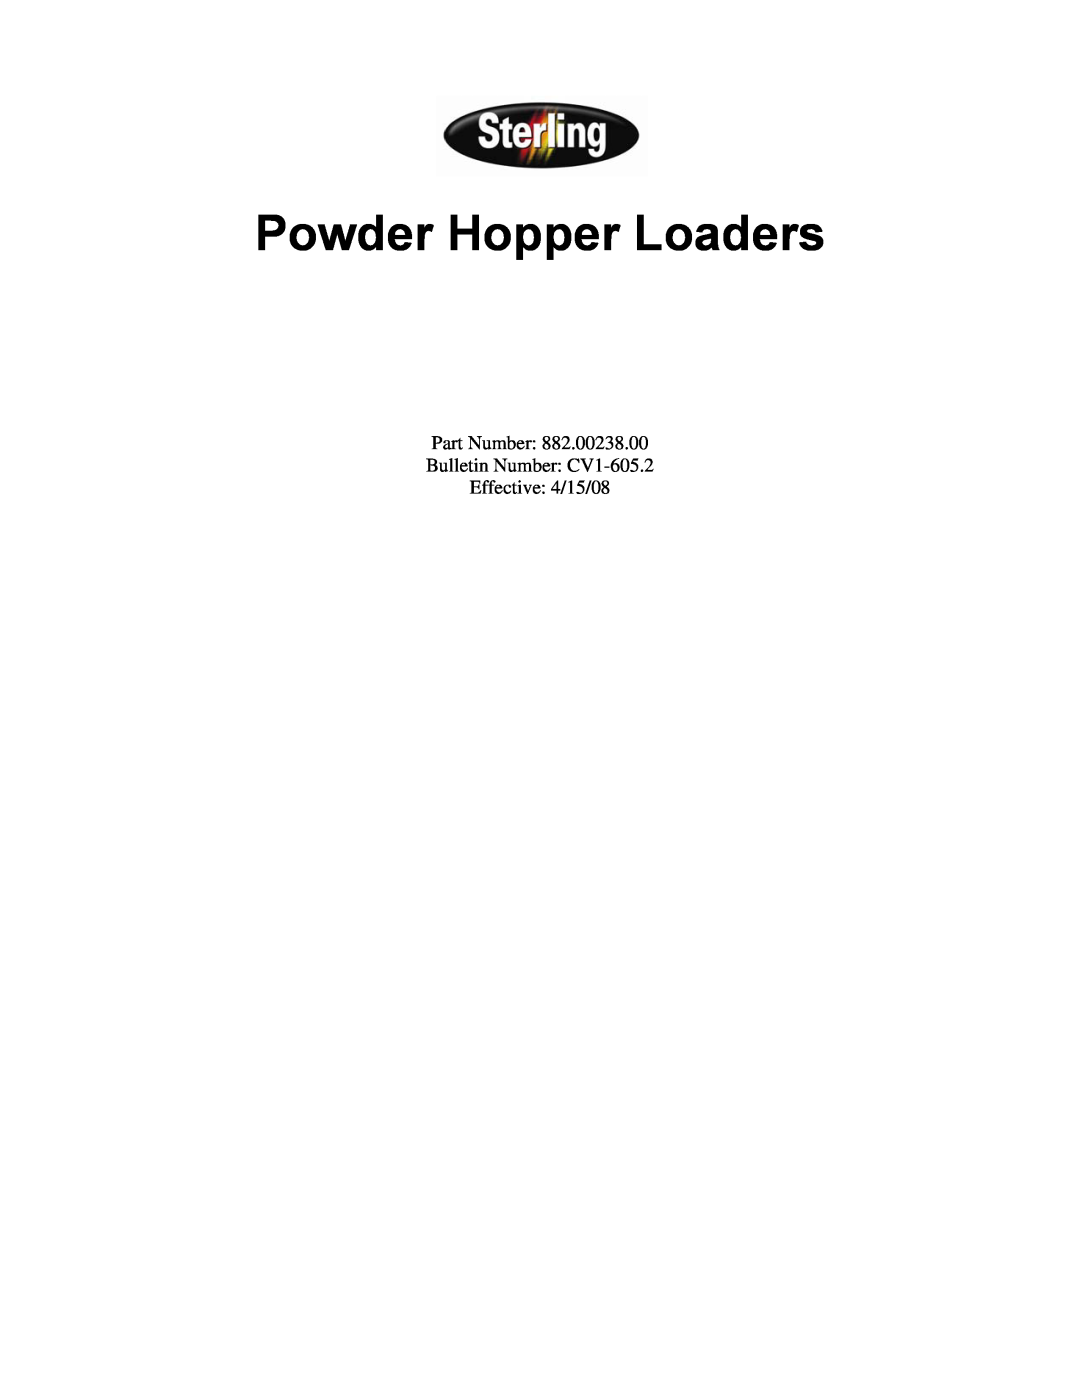 Sterling 882, 238 manual Powder Hopper Loaders, Part Number Bulletin Number CV1-605.2 Effective 4/15/08 